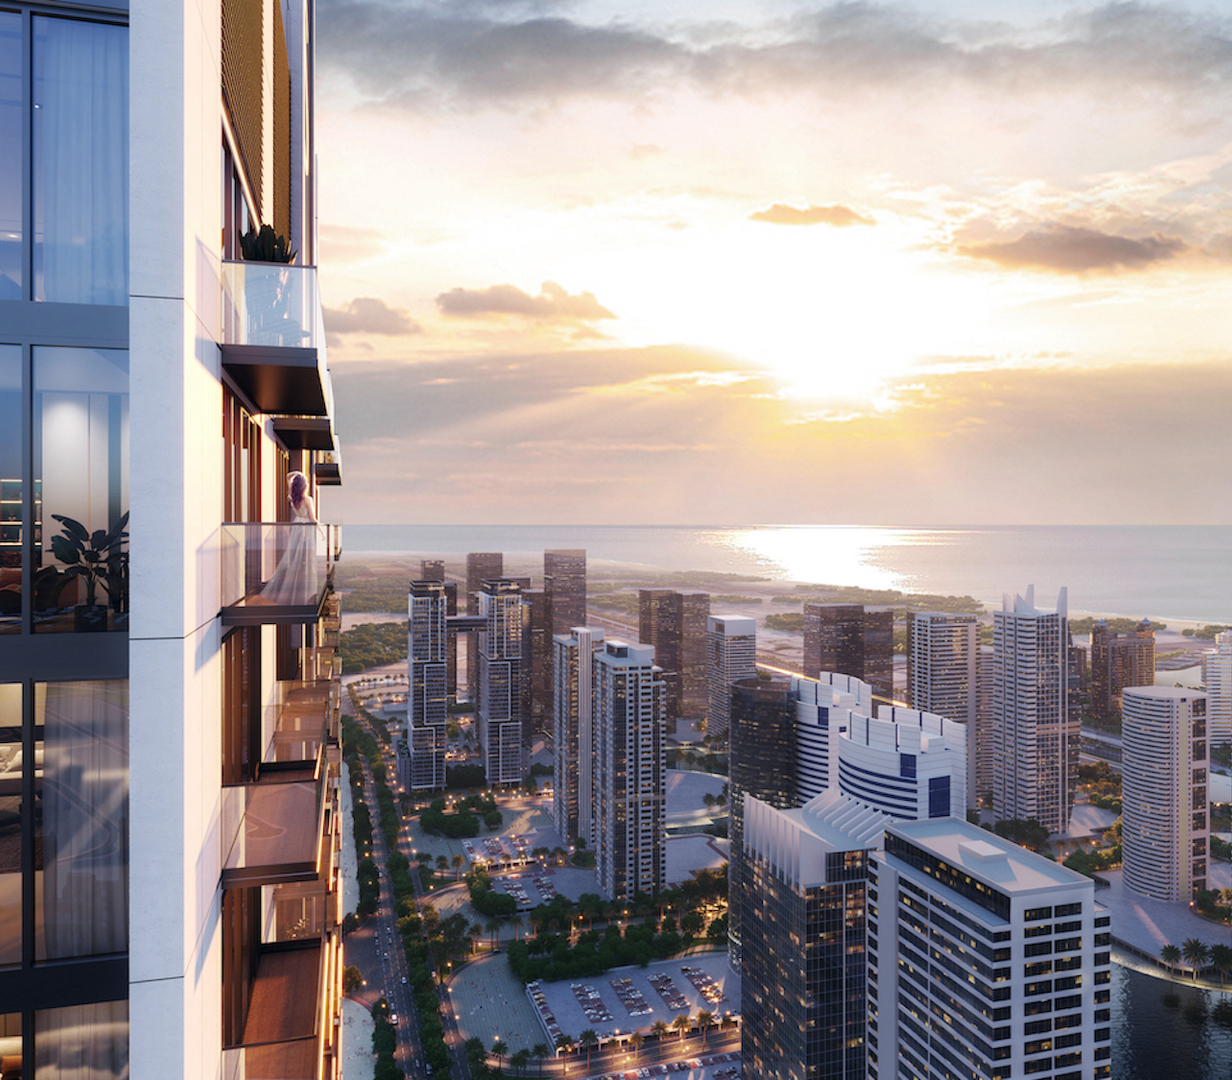 Moderní byty a penthousy v mrakodrapové rezidenci v Dubaji s výhledem na moře